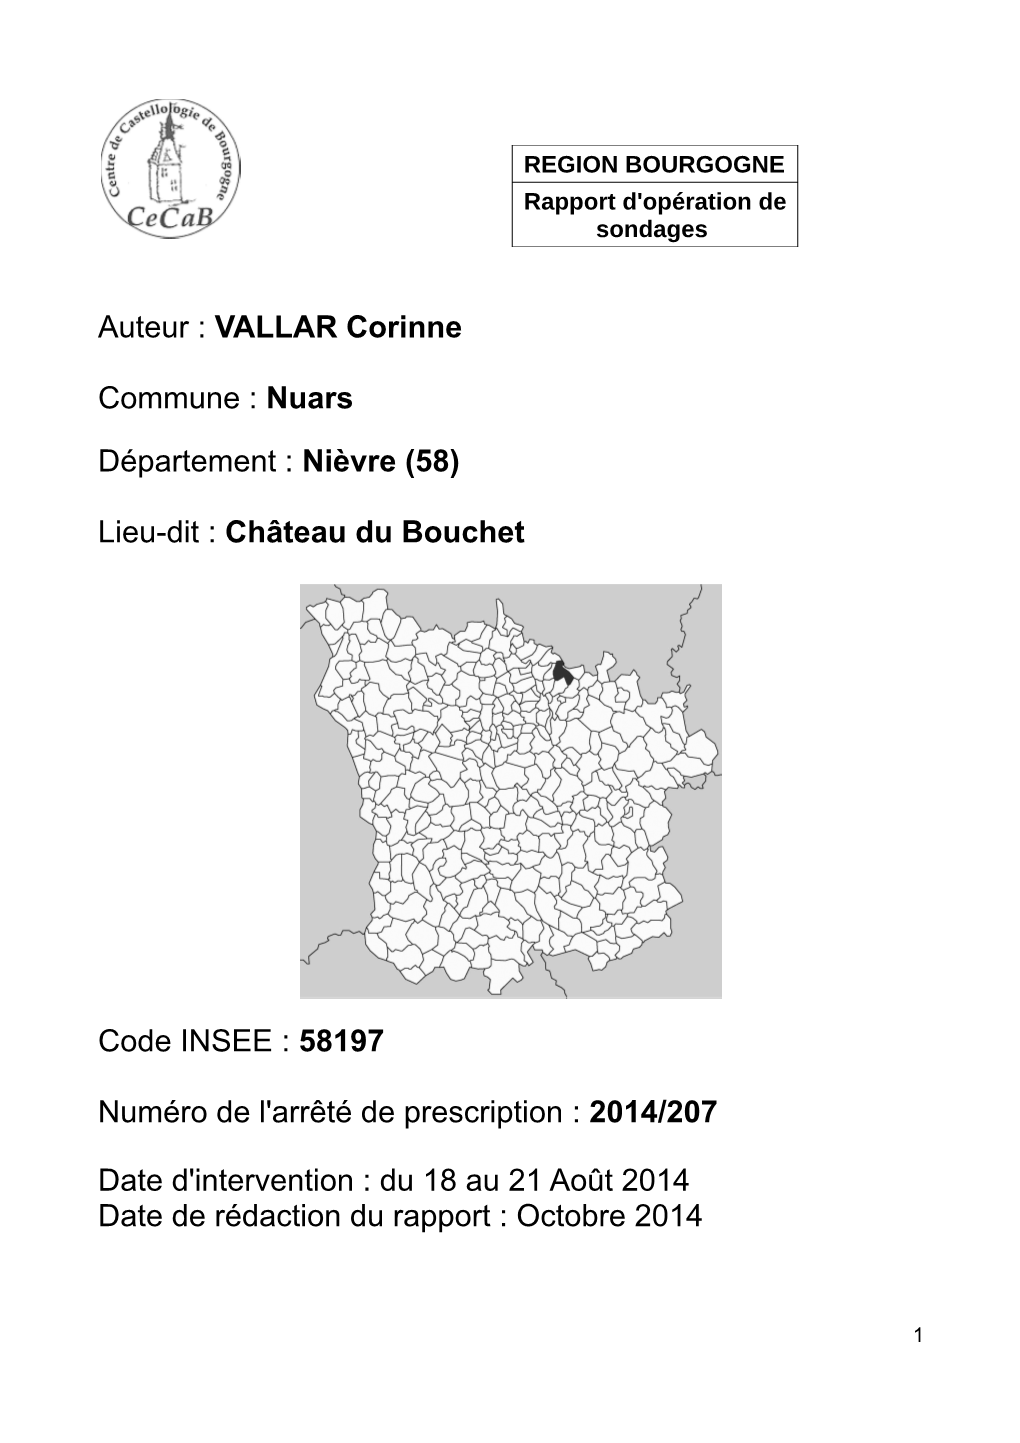 Auteur : VALLAR Corinne Commune : Nuars Département : Nièvre (58) Lieu-Dit : Château Du Bouchet Code INSEE : 58197 Numéro De